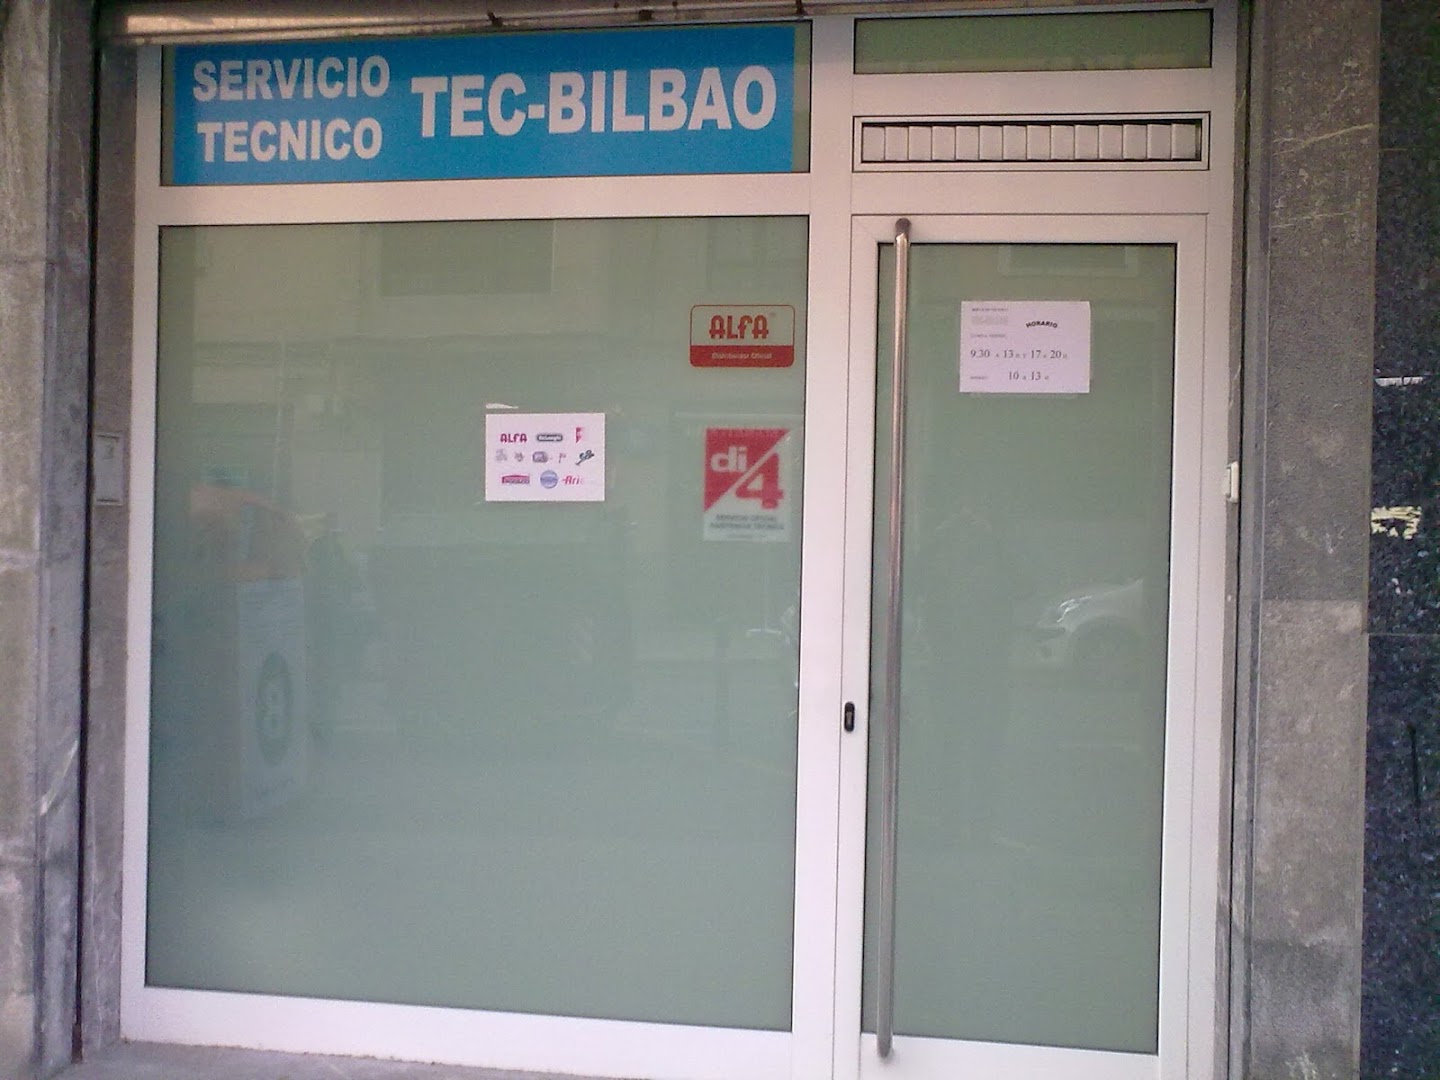 TEC-BILBAO